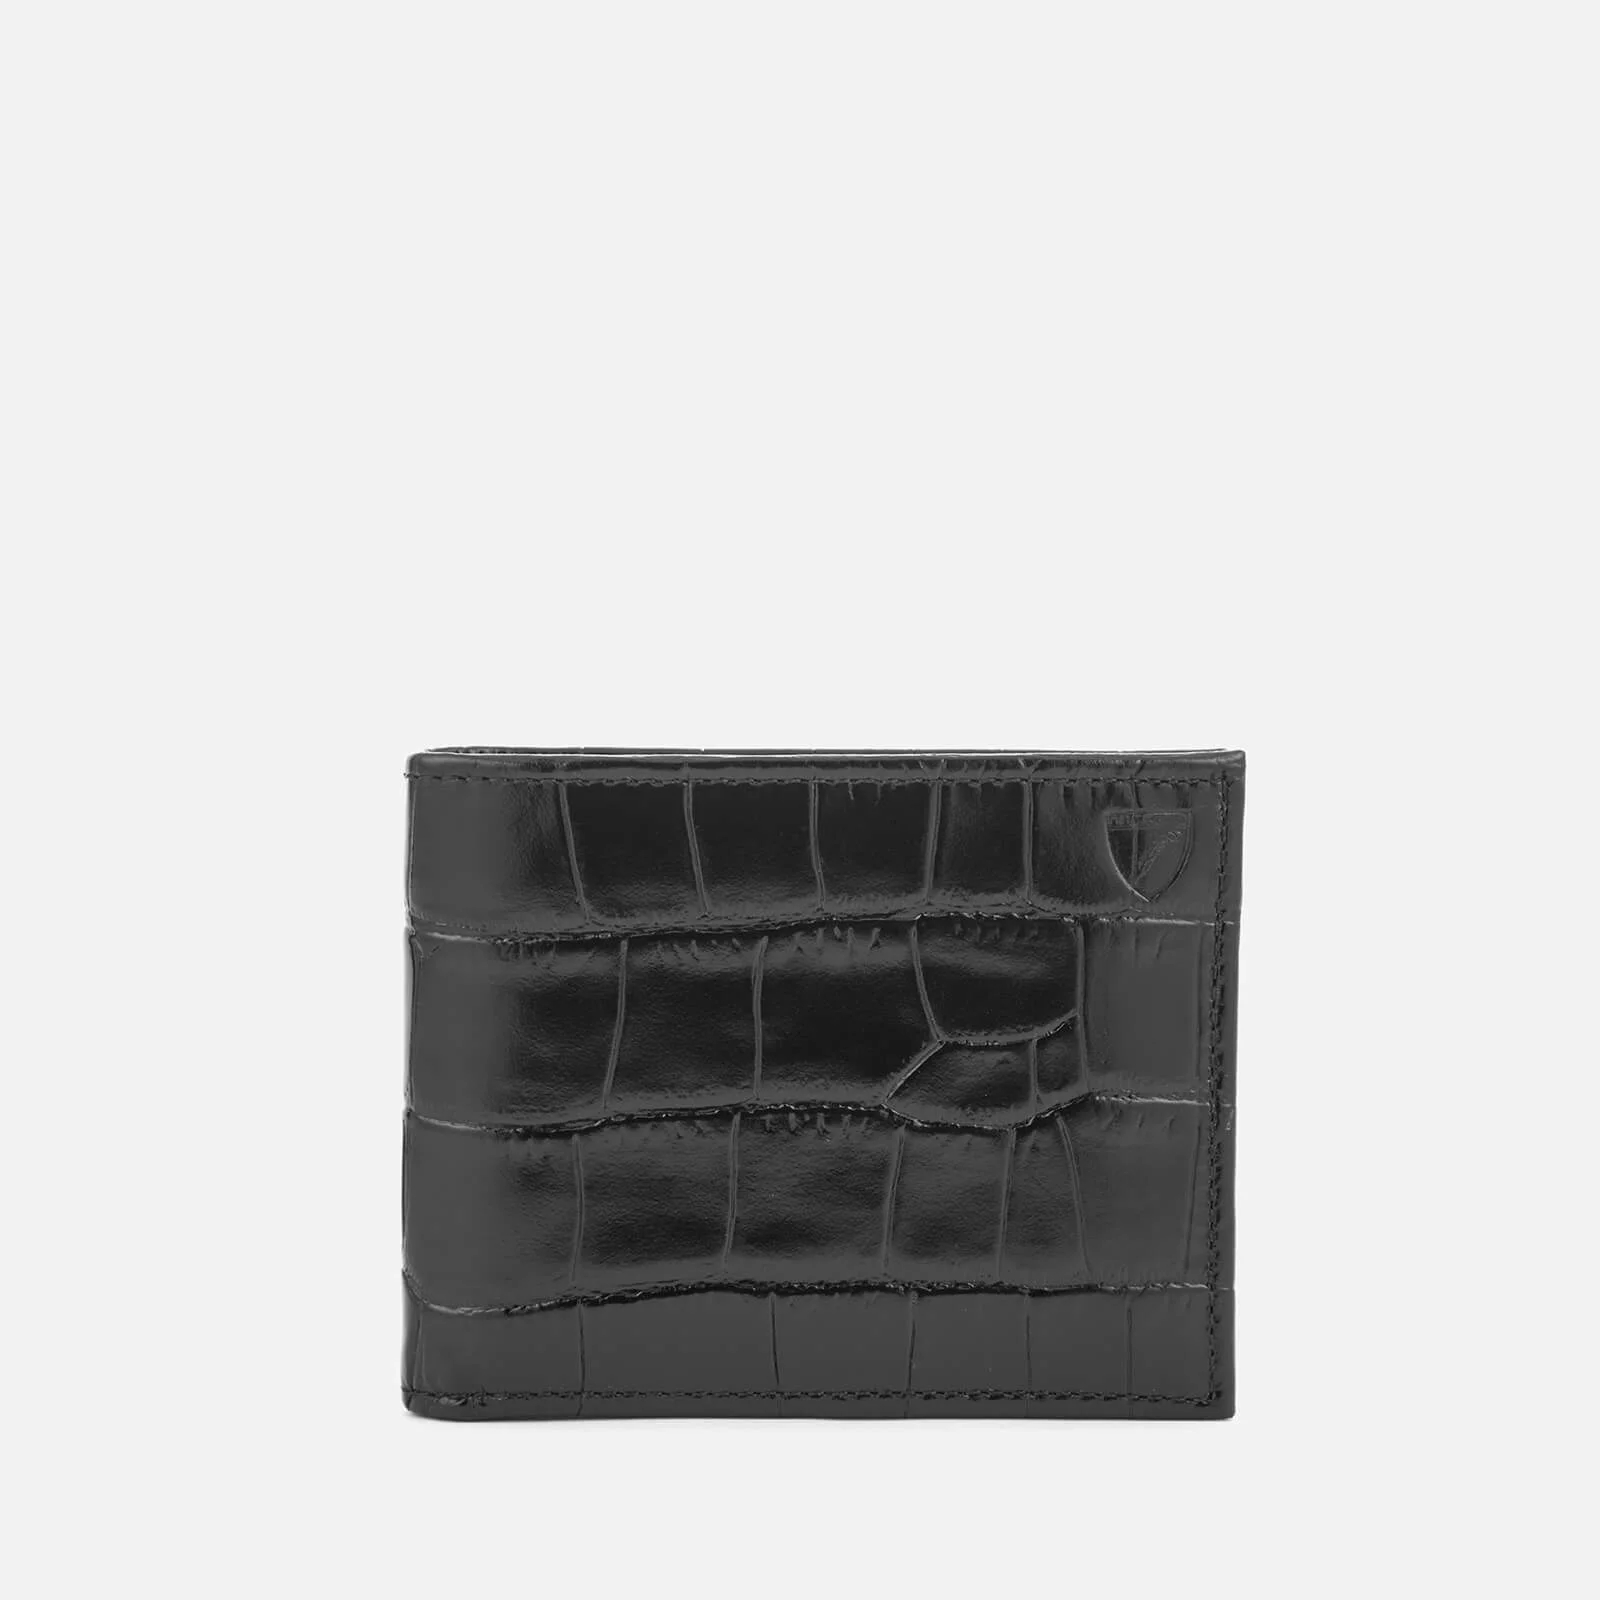 Aspinal of London Men's Billfold Wallet - Black/Cobalt Image 1